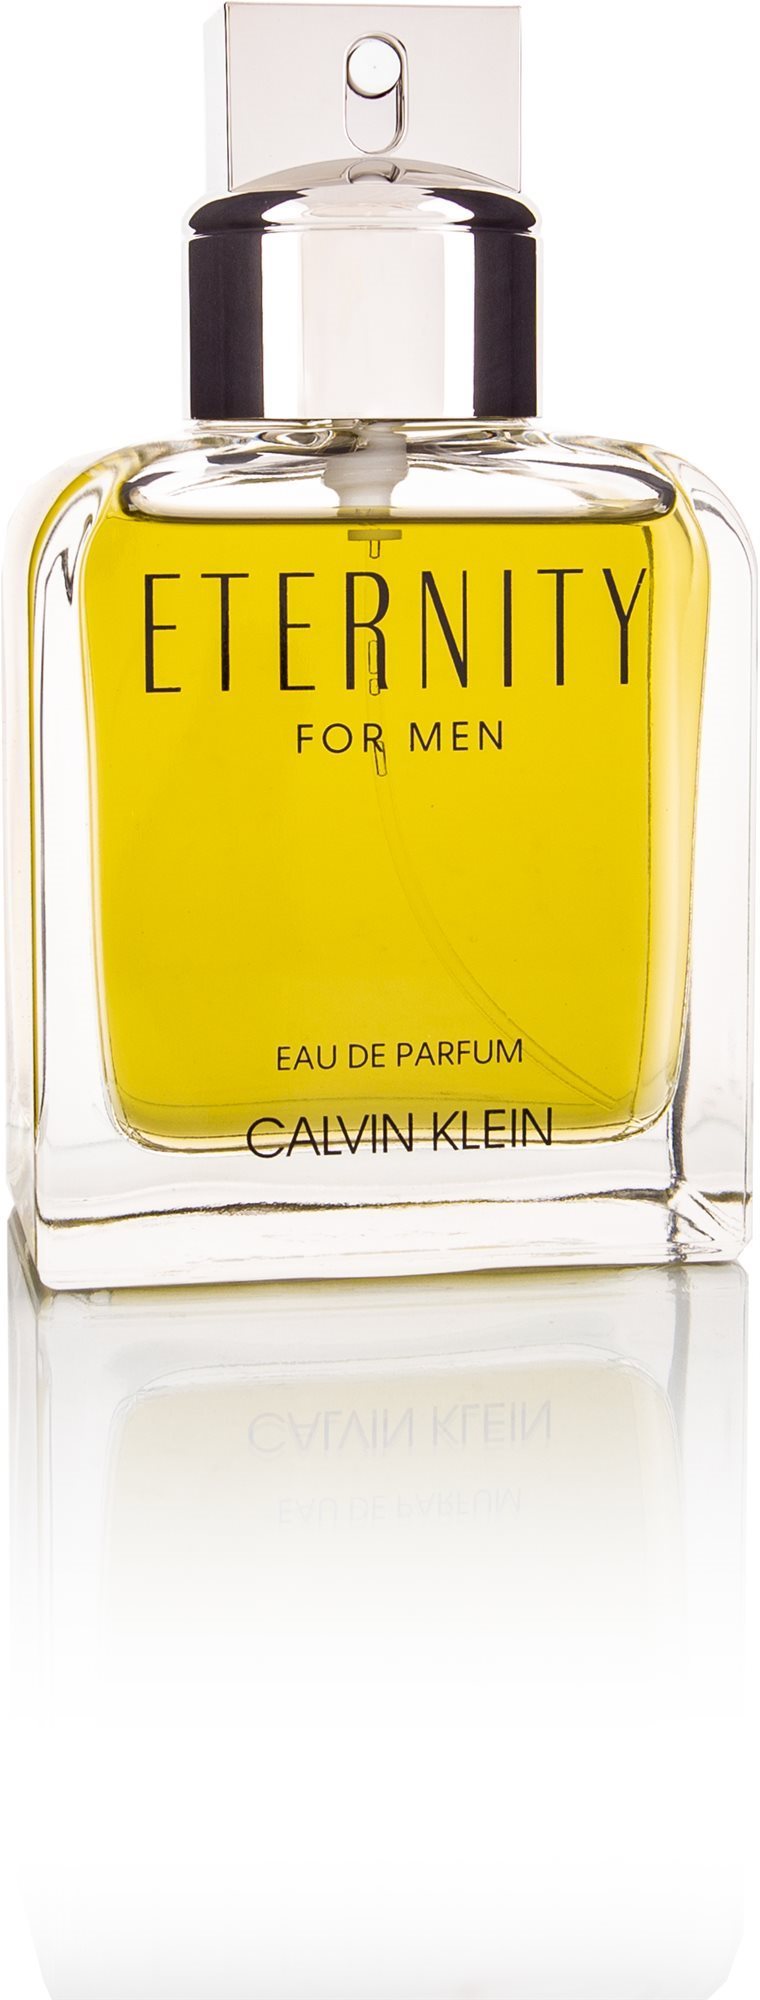 CALVIN KLEIN Eternity For Men EdP